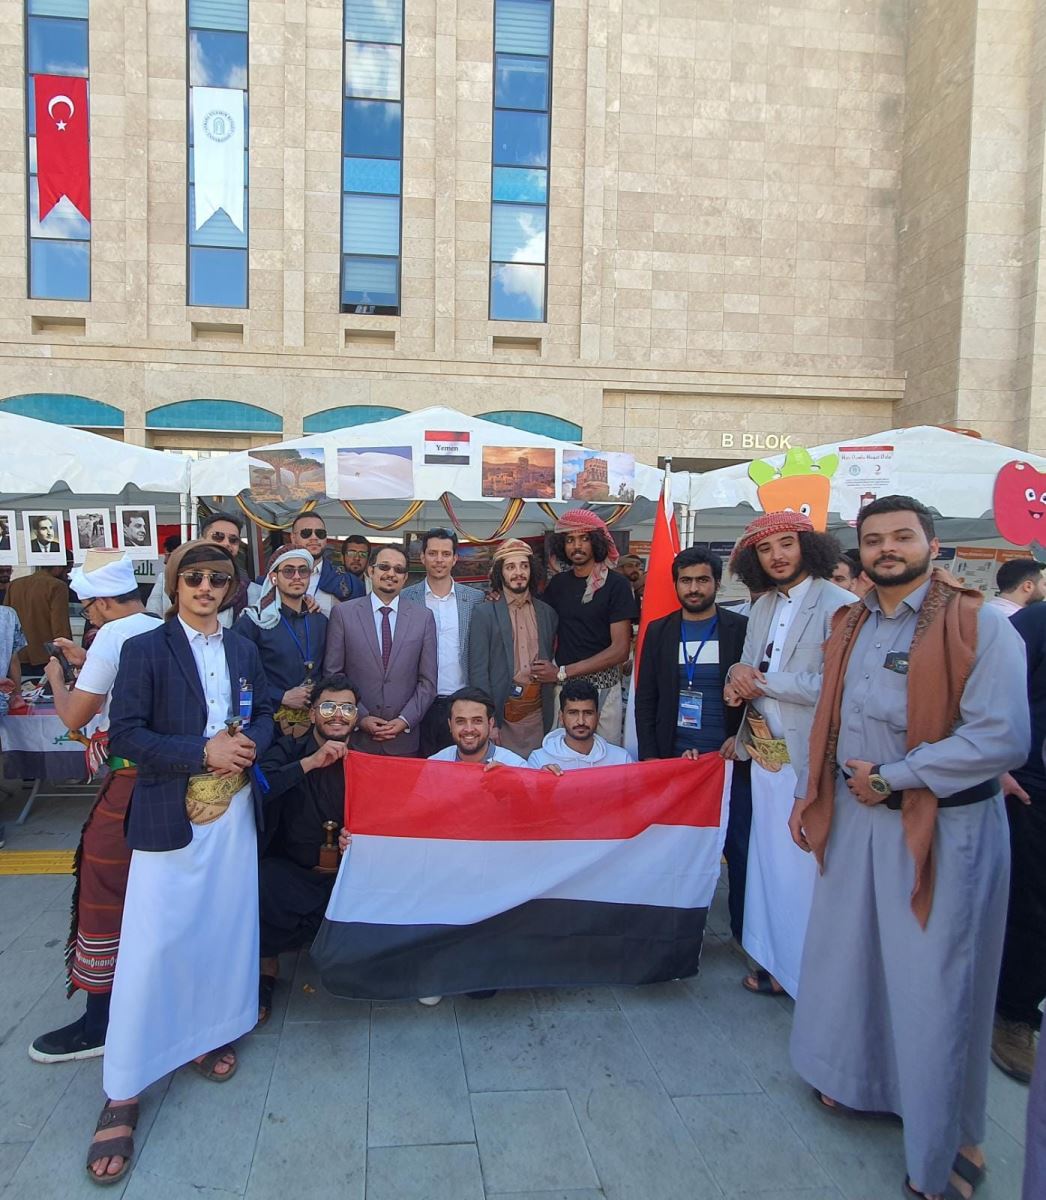 السفارة بالشراكة مع اتحاد الطلاب اليمنيين في انقرة تشارك في احتفال اليوم الثقافي الدولي  للطلاب الأتراك والأجانب بجامعة يلدرم بايزيد